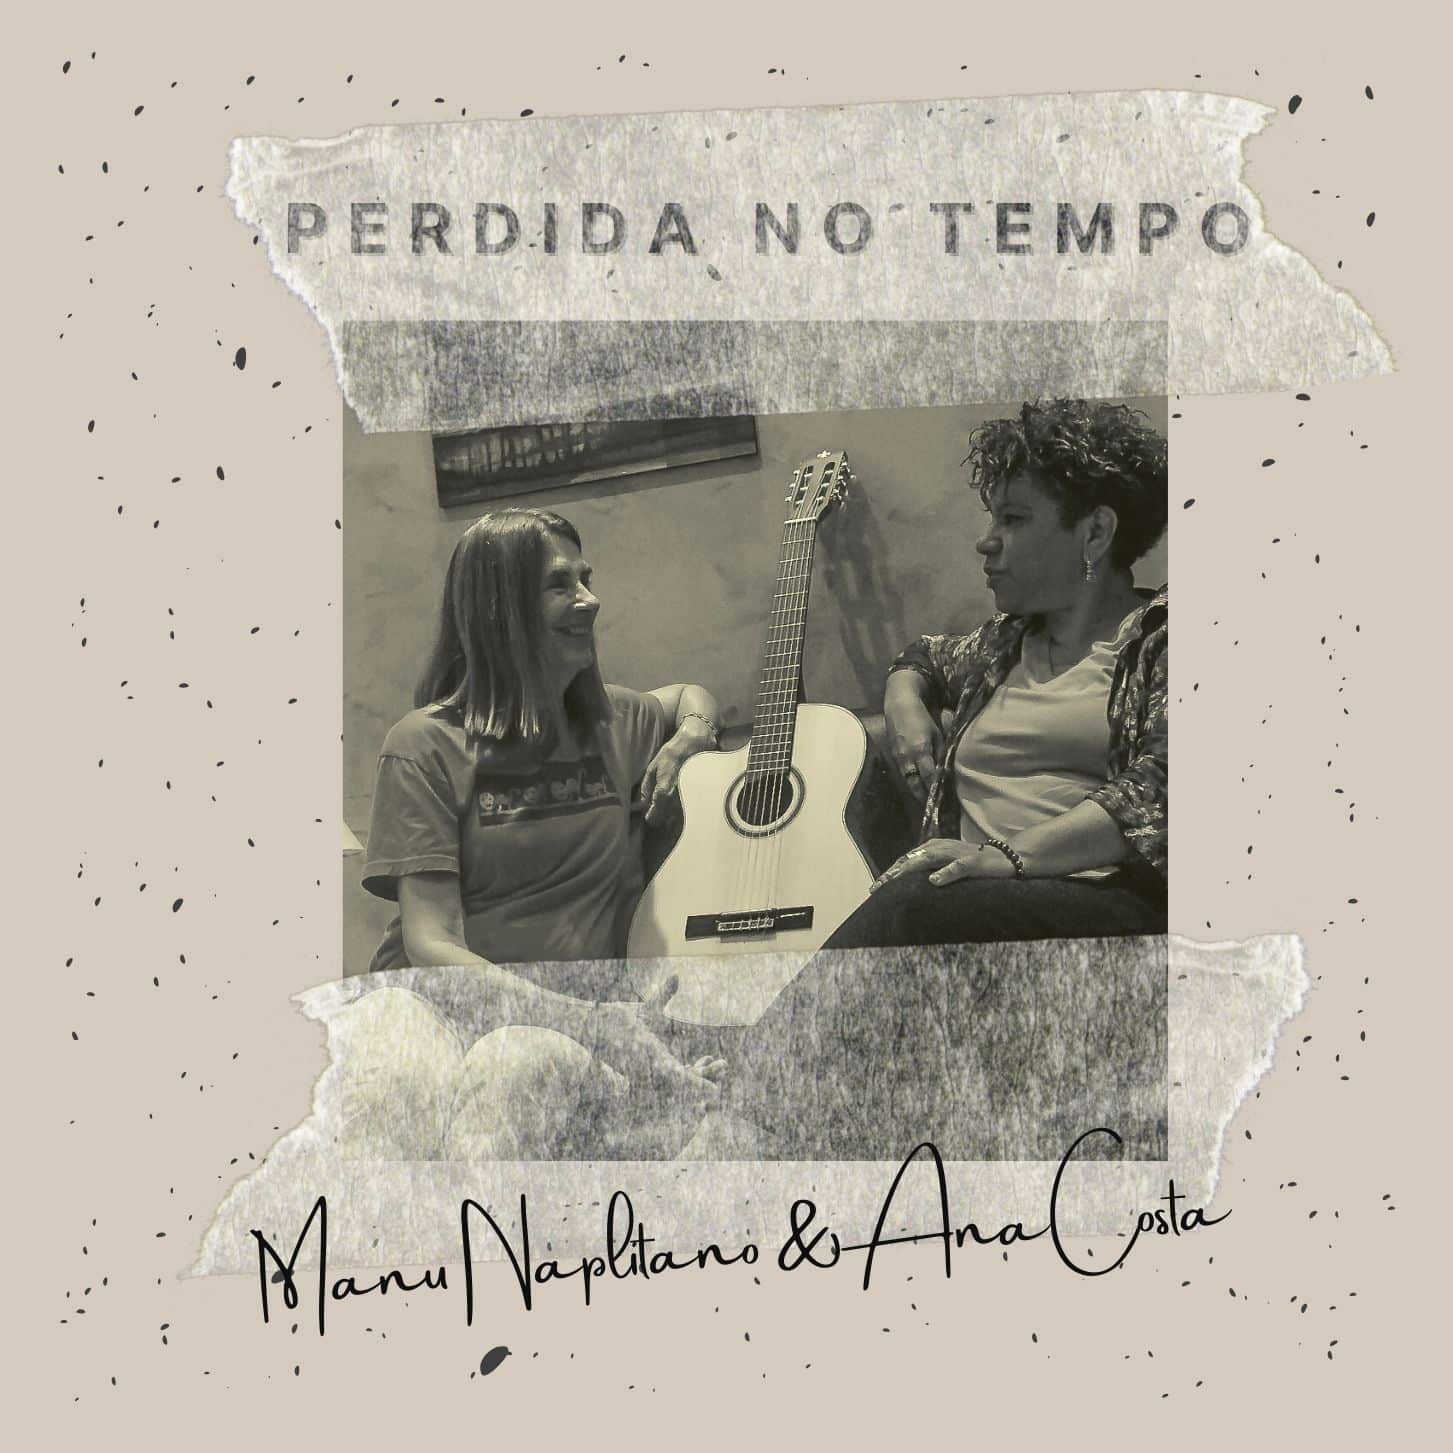 revistaprosaversoearte.com - Manu Napolitano lança 'Perdida no Tempo', com participação da cantora Ana Costa